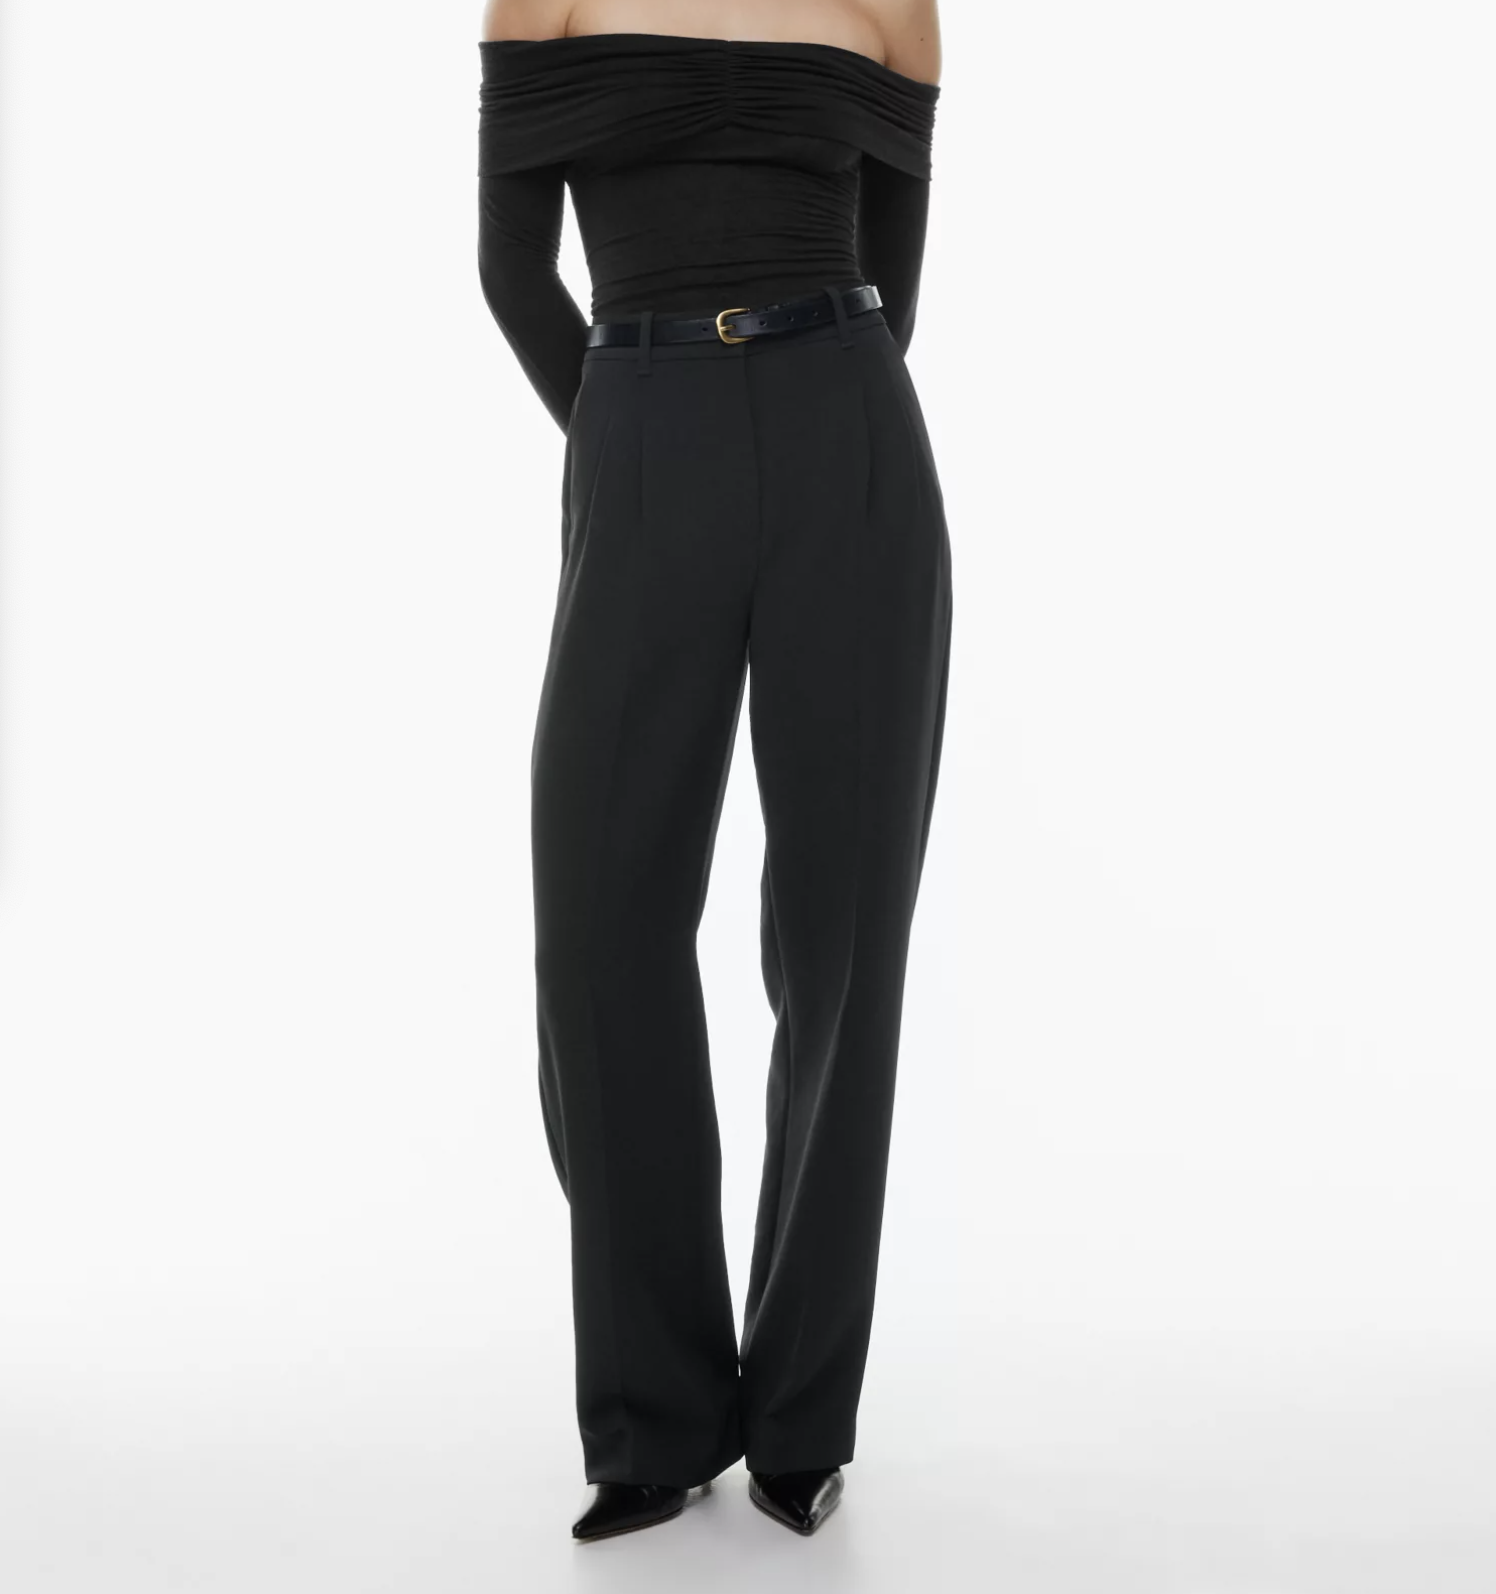 ketyyh-chn99 Black Dress Pants Women Women's Bootcut Dress Pants 28